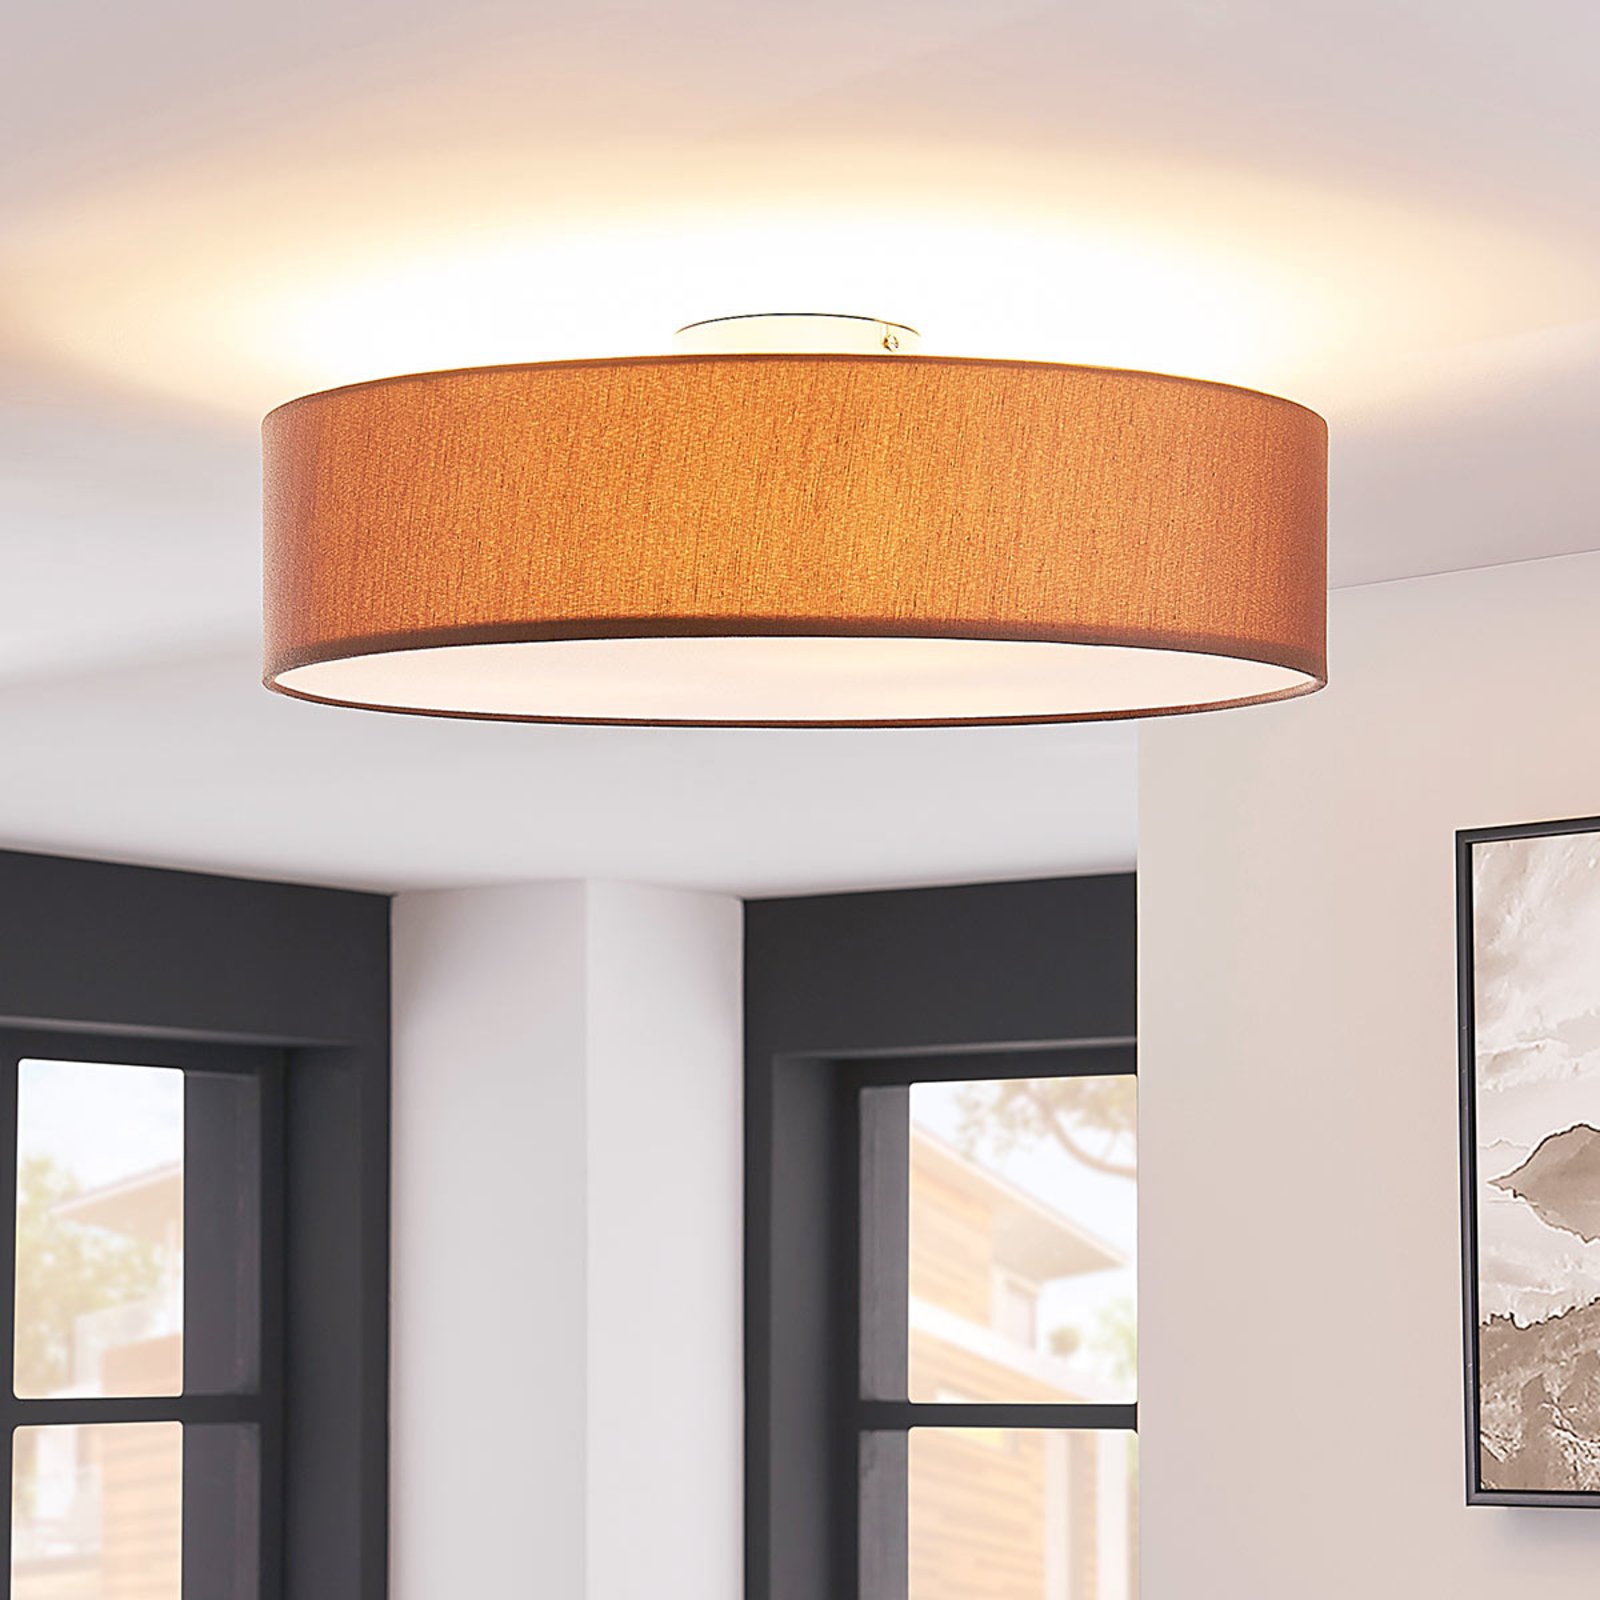 Sebatin ceiling light for E27 bulbs, 50 cm, brown